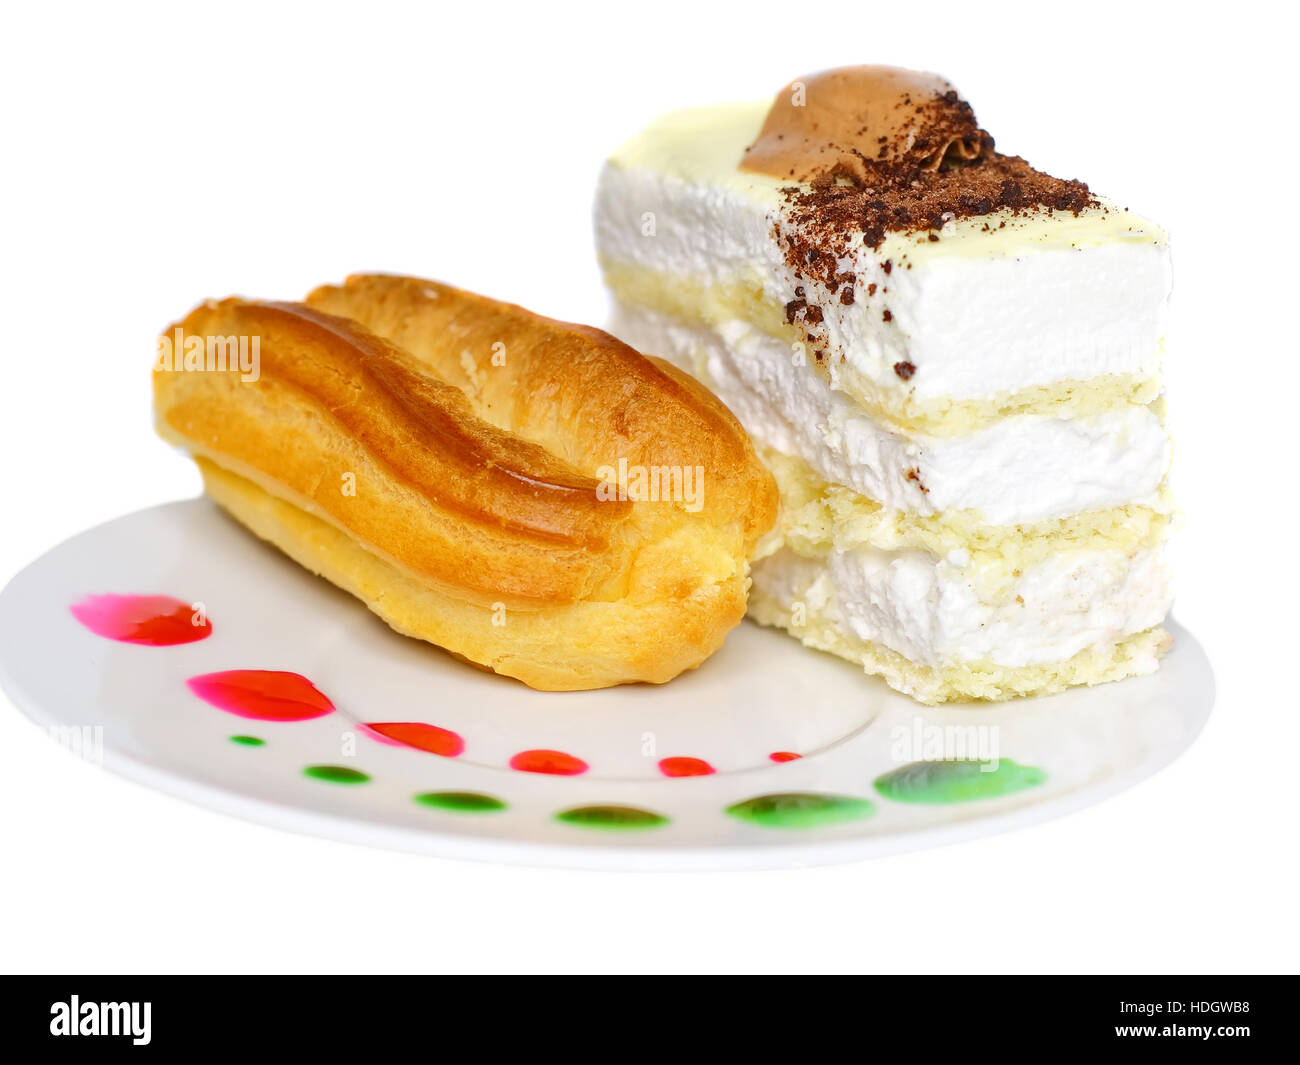 Biskuitkuchen und Eclair Kuchen auf Teller mit Obst Saft Flecken. Isoliert Stockfoto